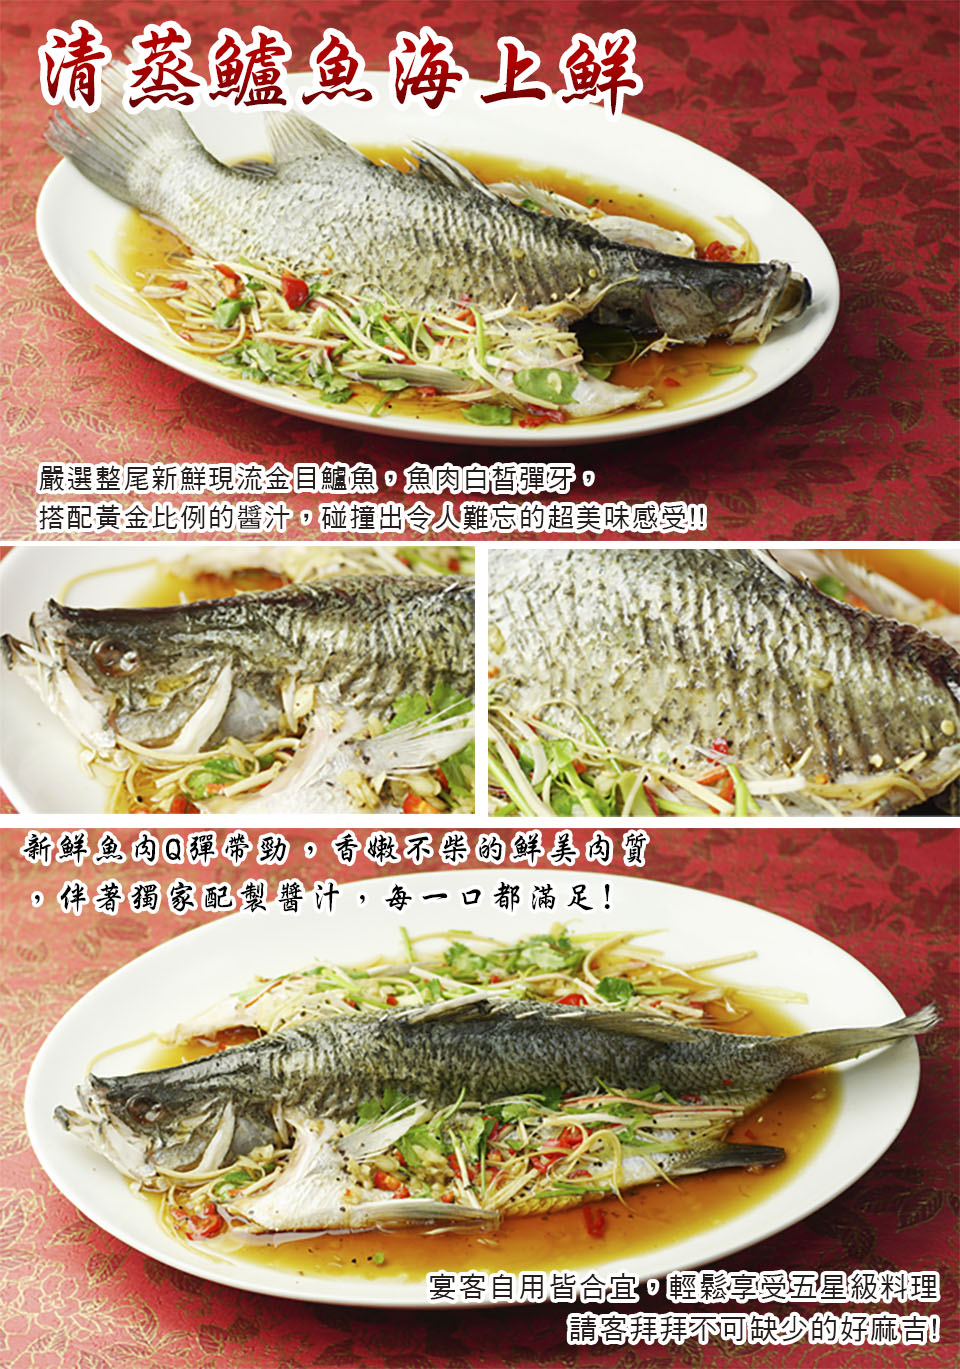 食尚達人 清蒸鱸魚海上鮮2件組(850g/份) 推薦